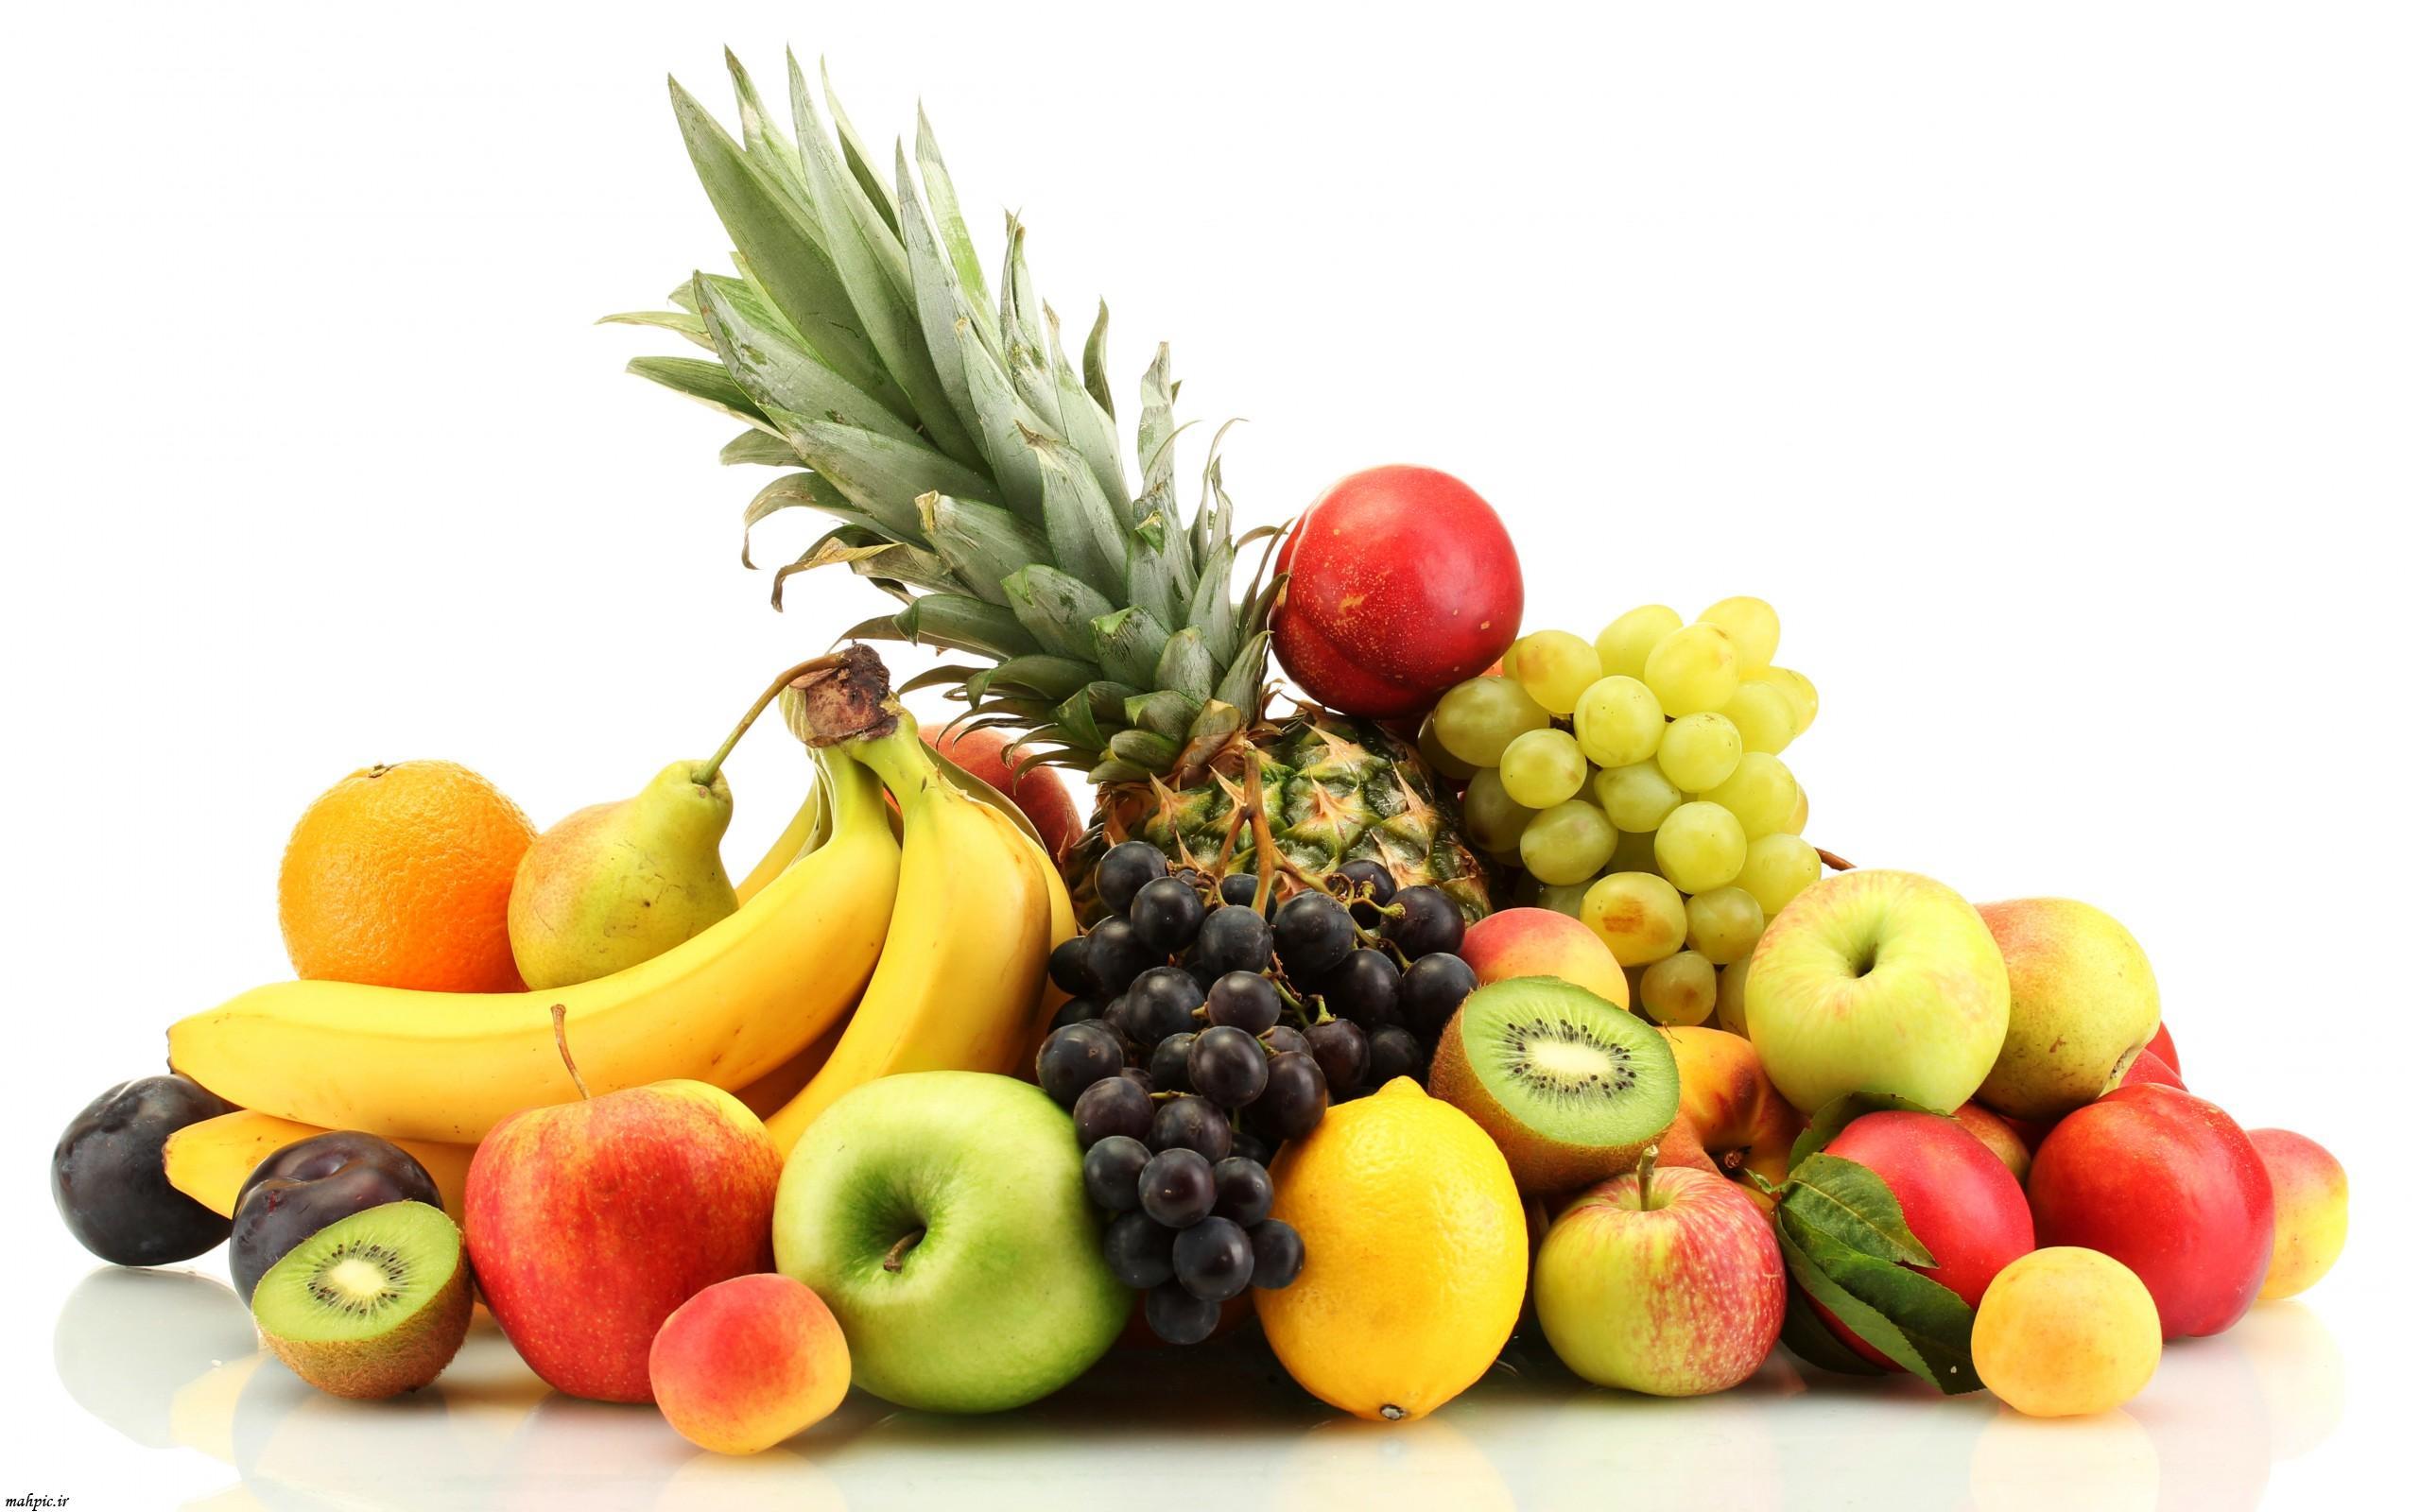 کدام میوه ها خاصیت چربی سوزی دارند؟